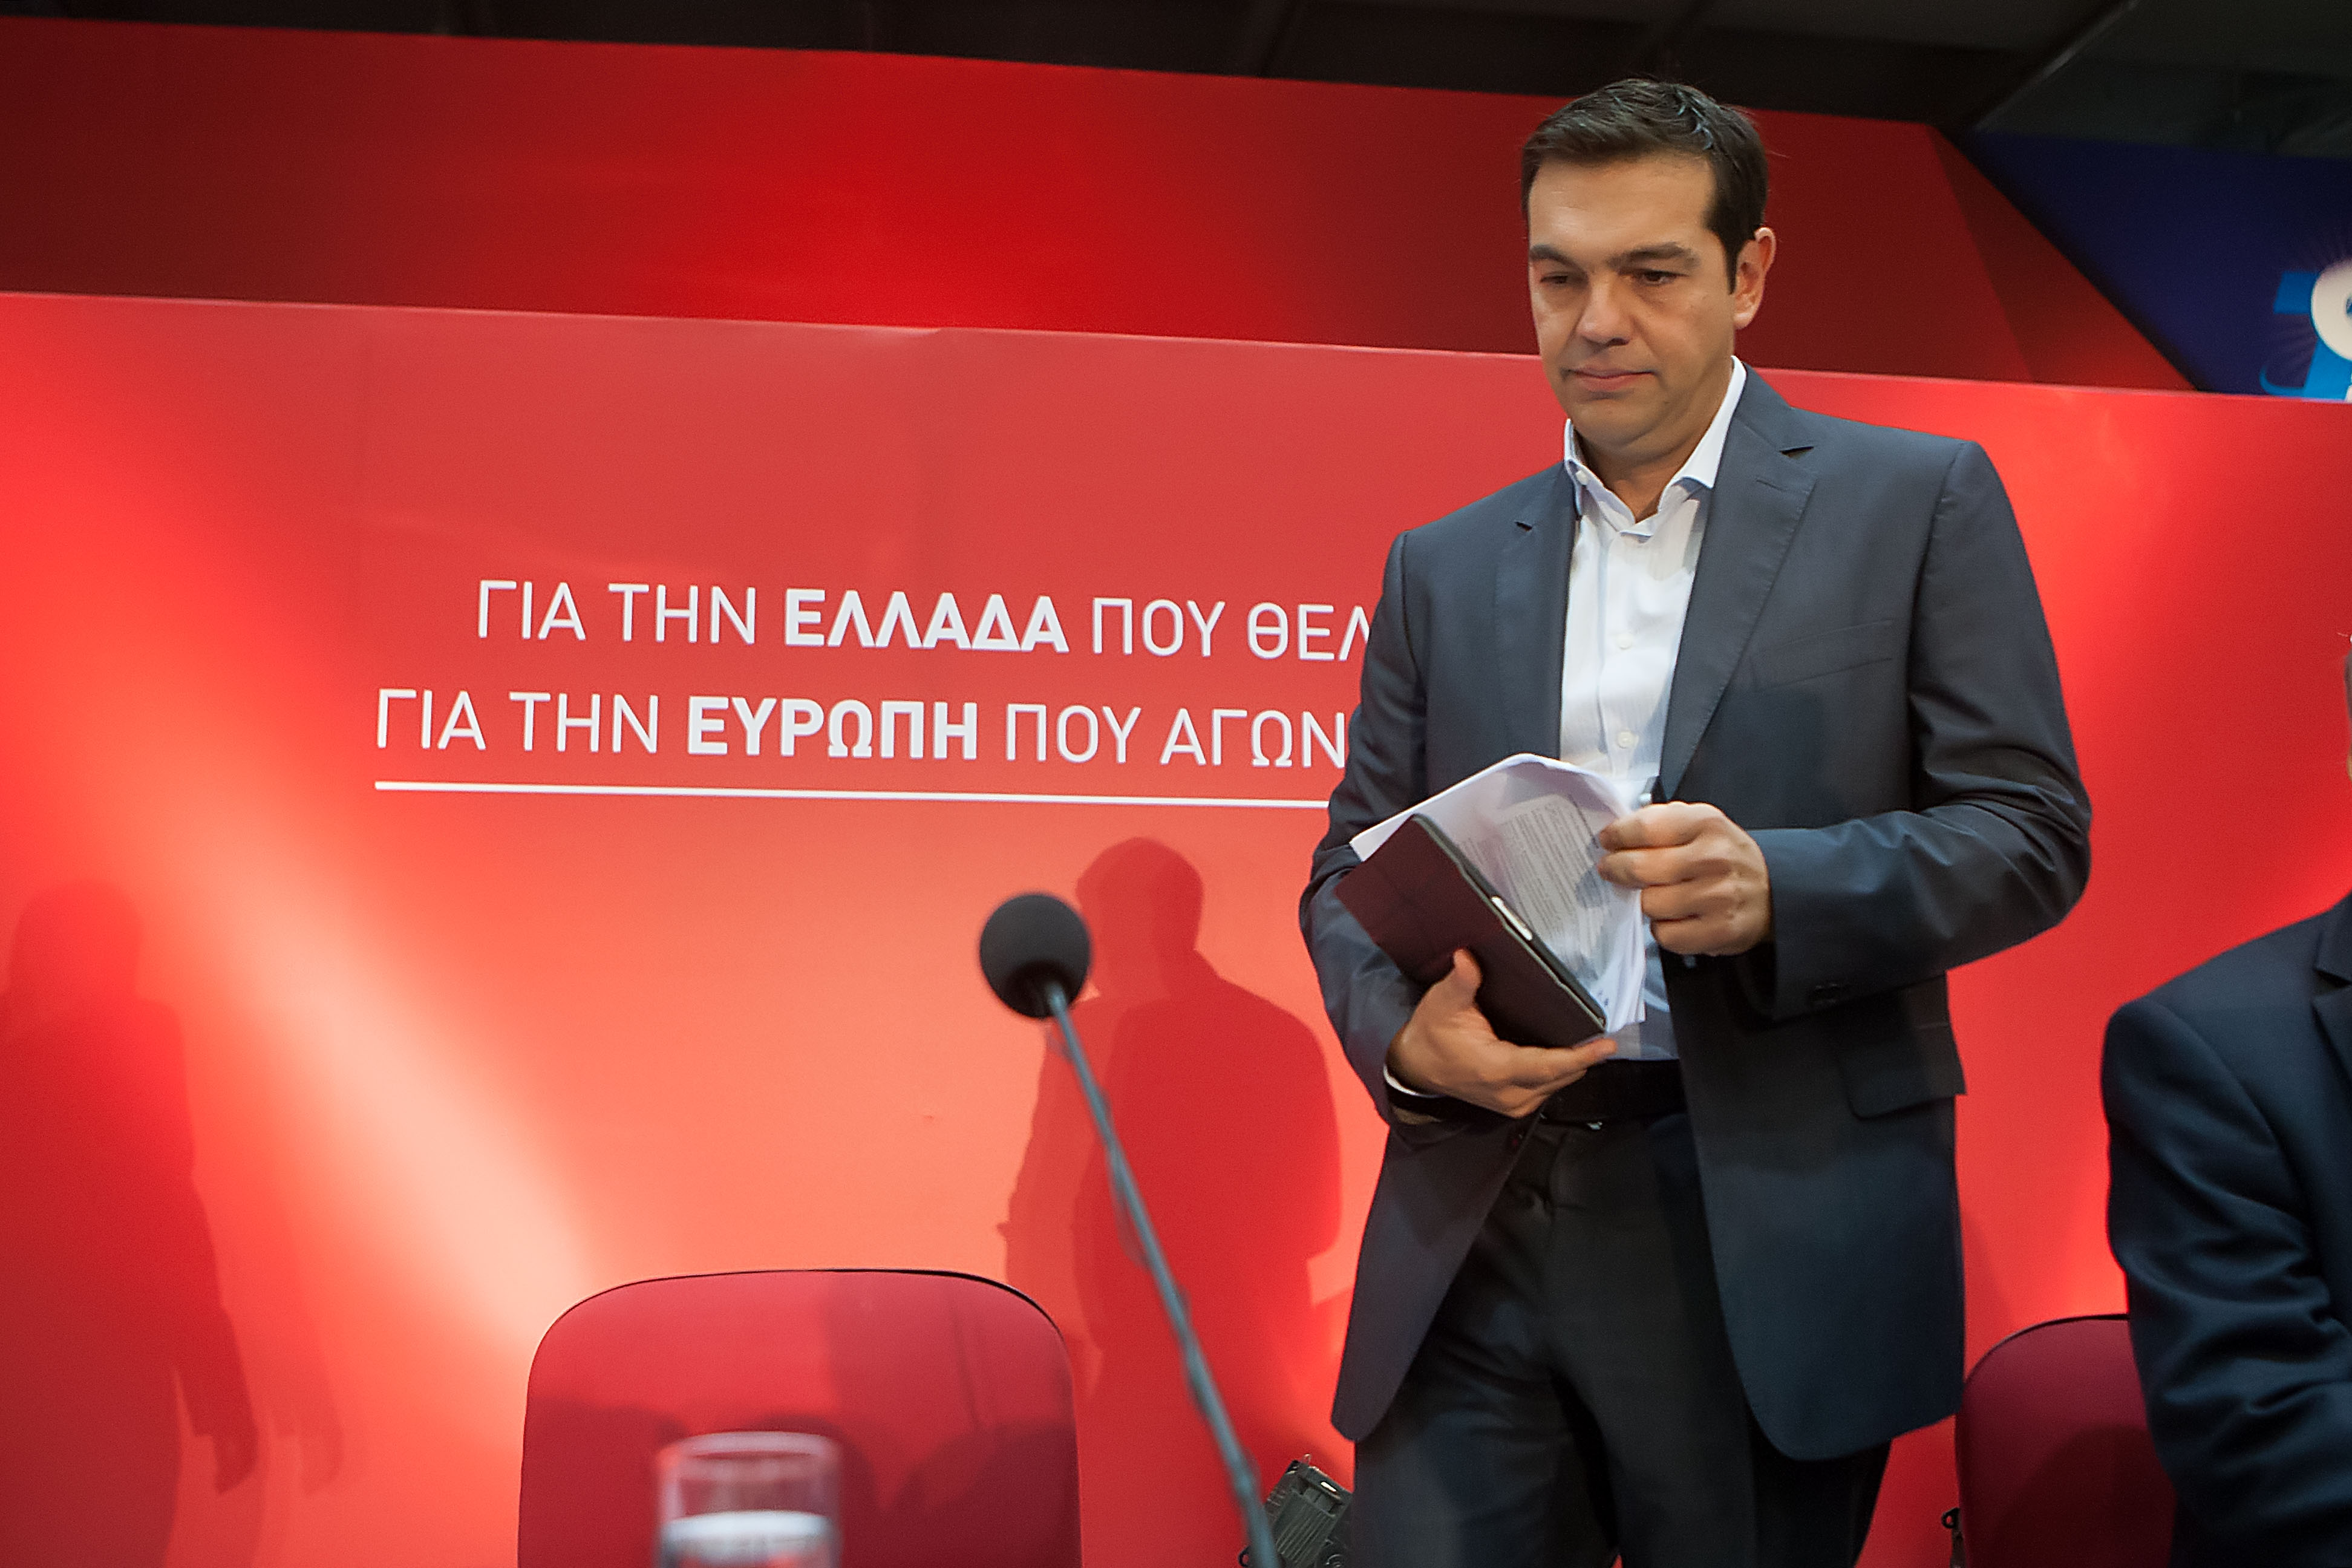 Τσίπρας στους FT: «Θέλω να παραμείνει η Ελλάδα στο ευρώ» – H εφημερίδα τον χαρακτηρίζει «ως πρωθυπουργό εν αναμονή»